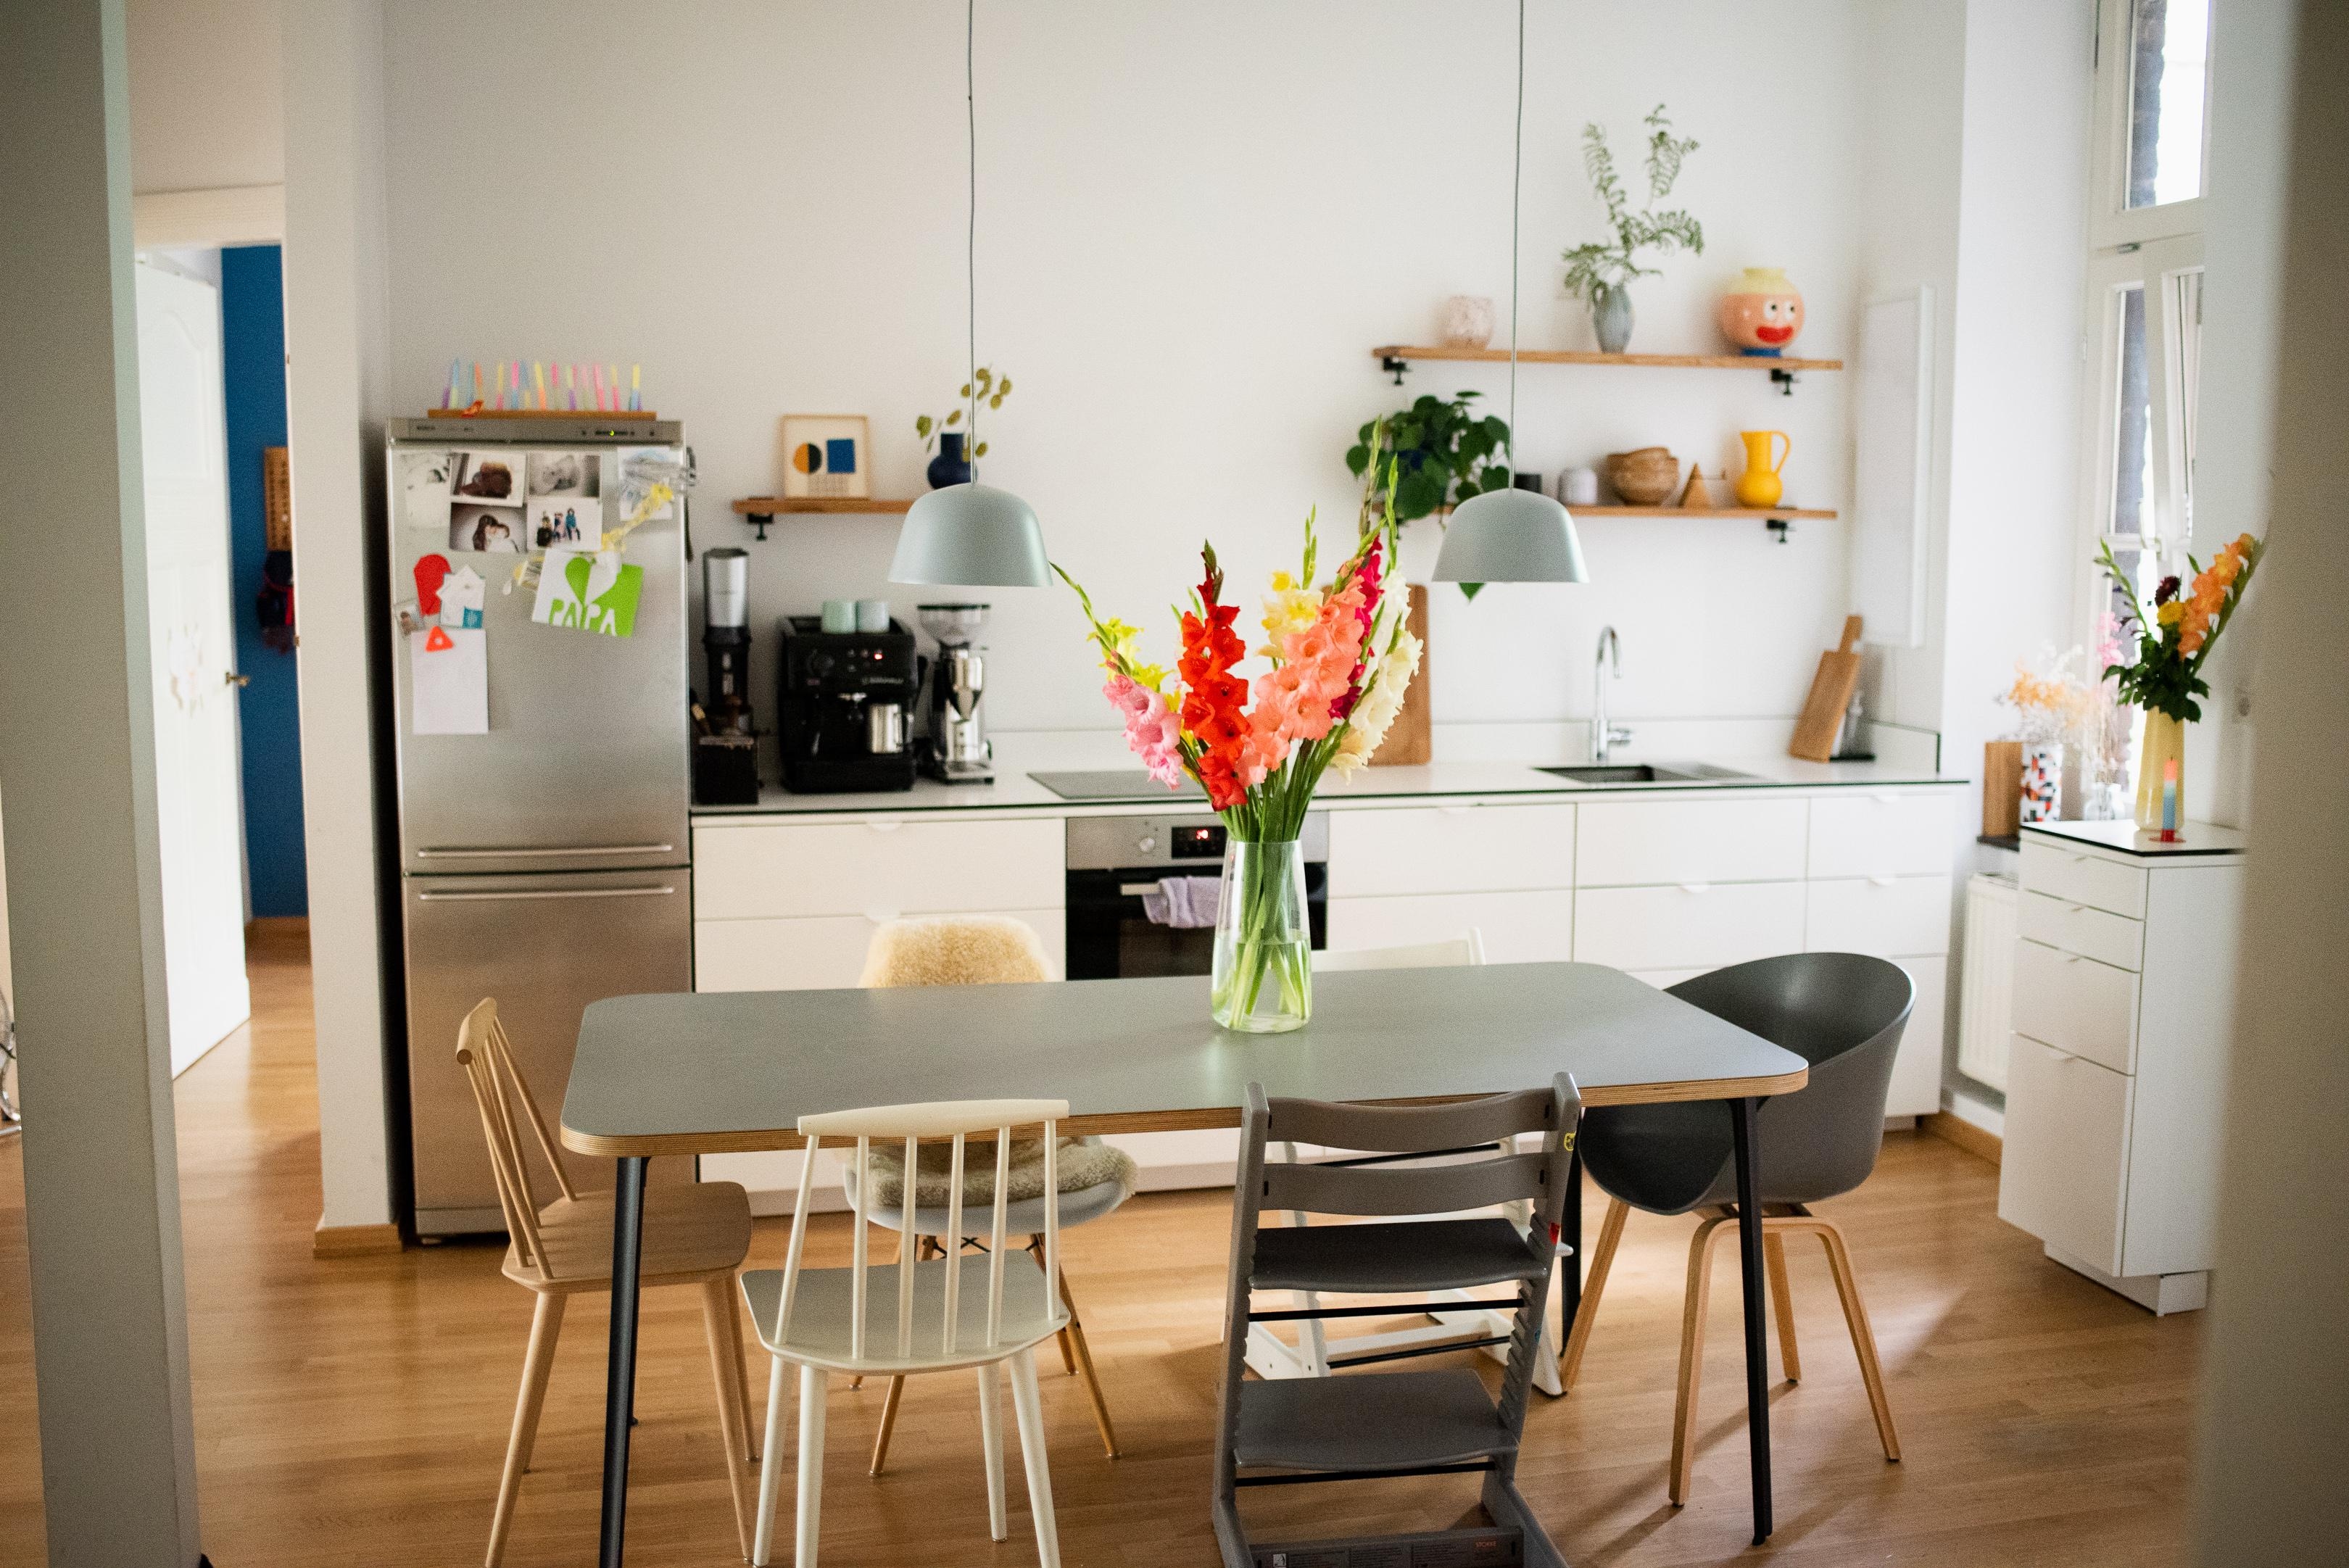 Sonniger Gruß aus der Küche #wohnküche #kitchenstyle #kitchen #stuhlmix #essplatz #gladiolen # freshflowers